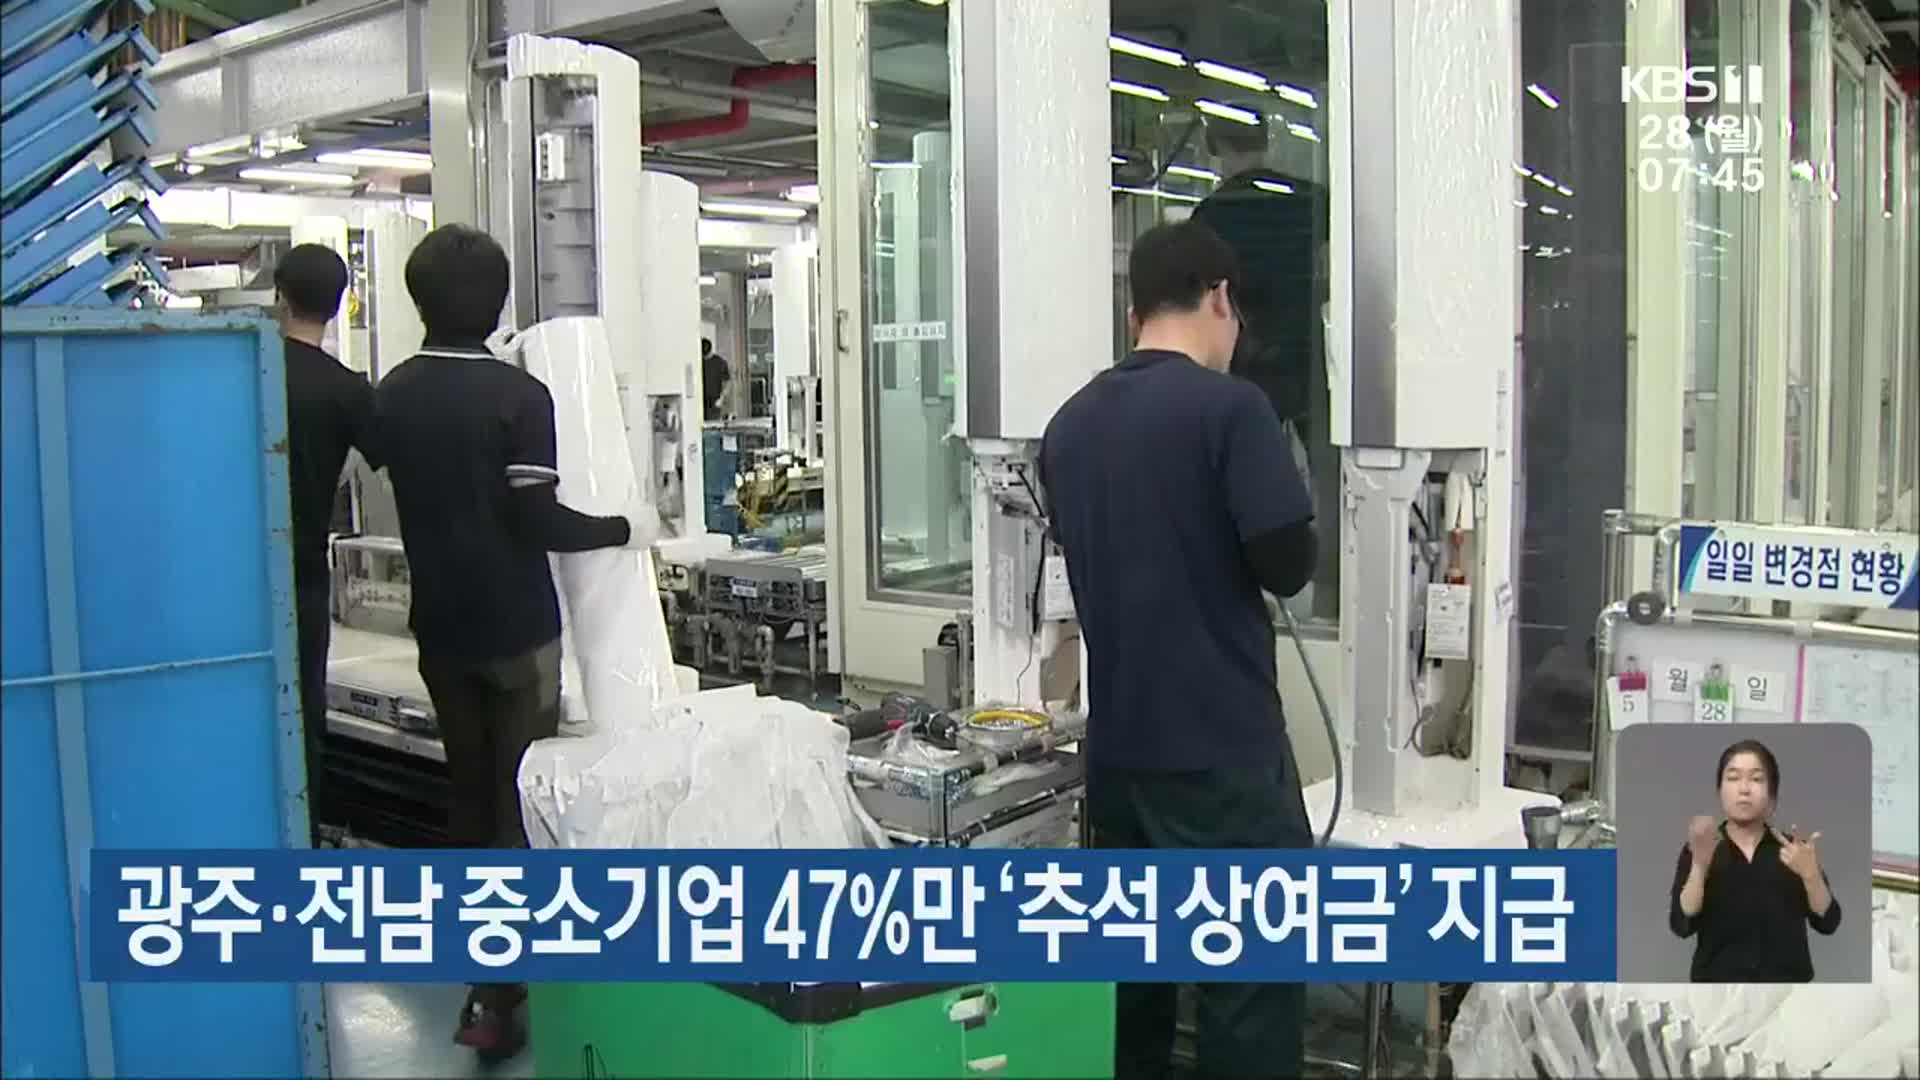 광주·전남 중소기업 47%만 ‘추석 상여금’ 지급